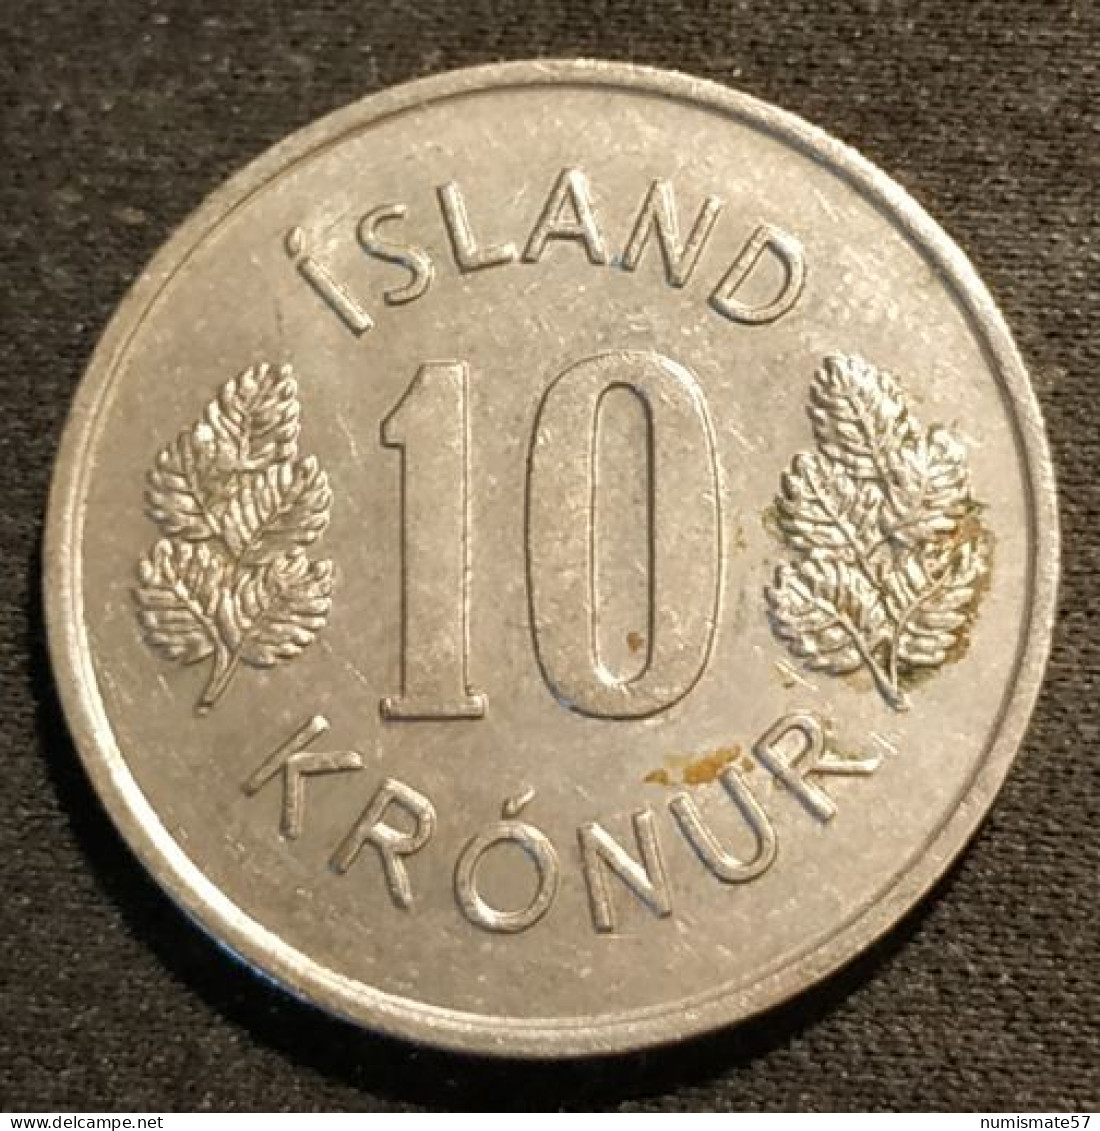 ISLANDE - ICELAND - 10 KRONUR 1975 - KM 15 - ISLAND - Iceland